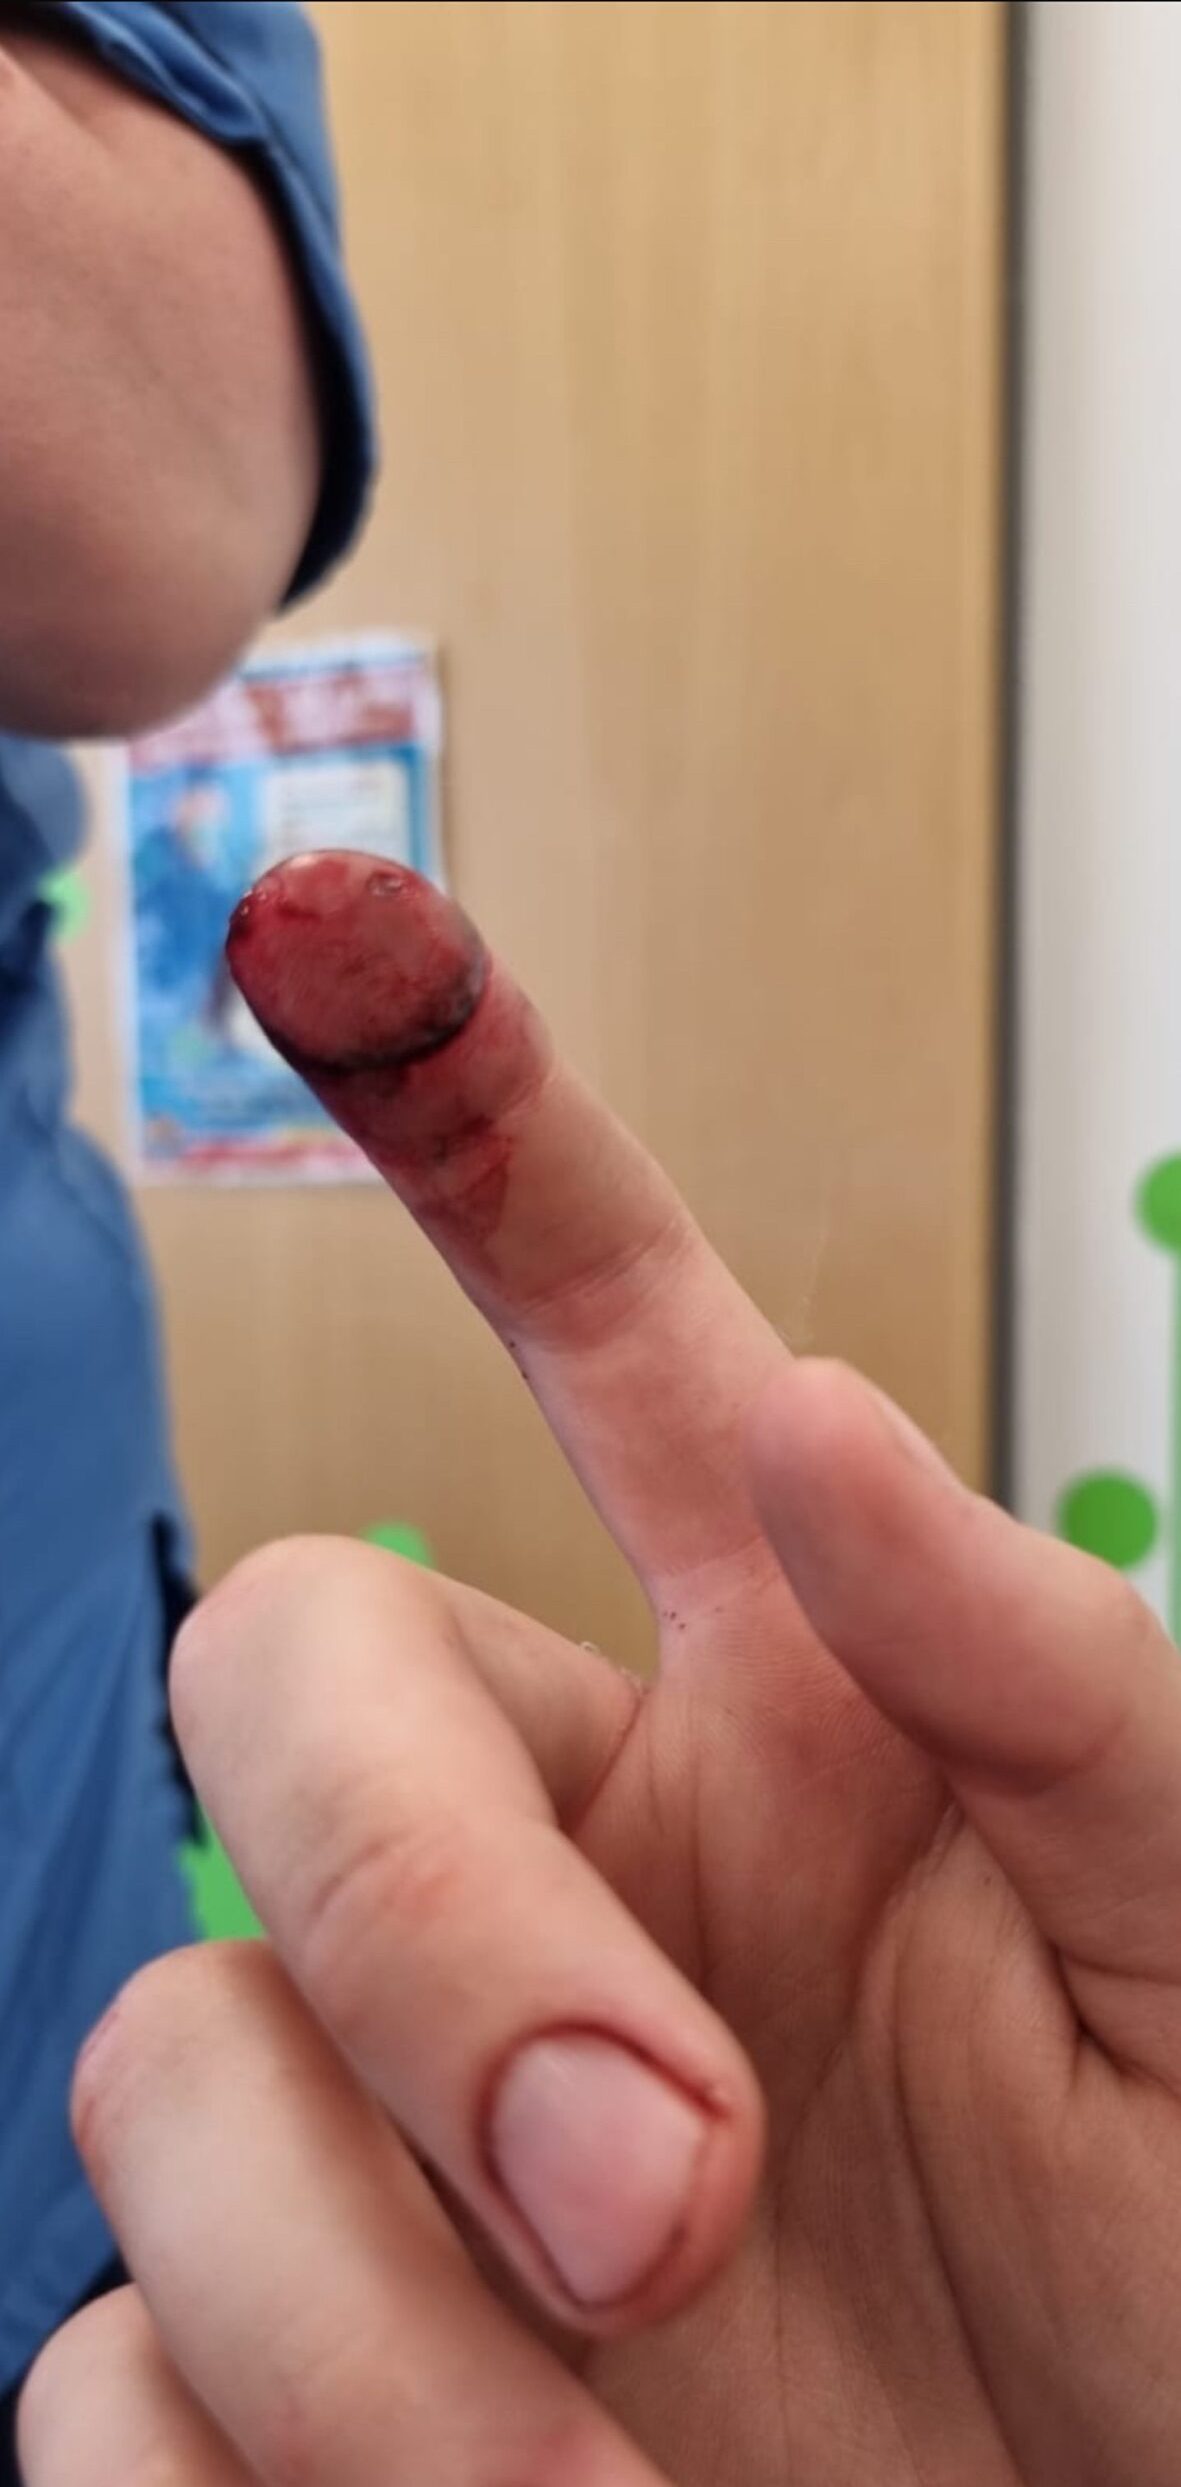 Oliver's injured finger 